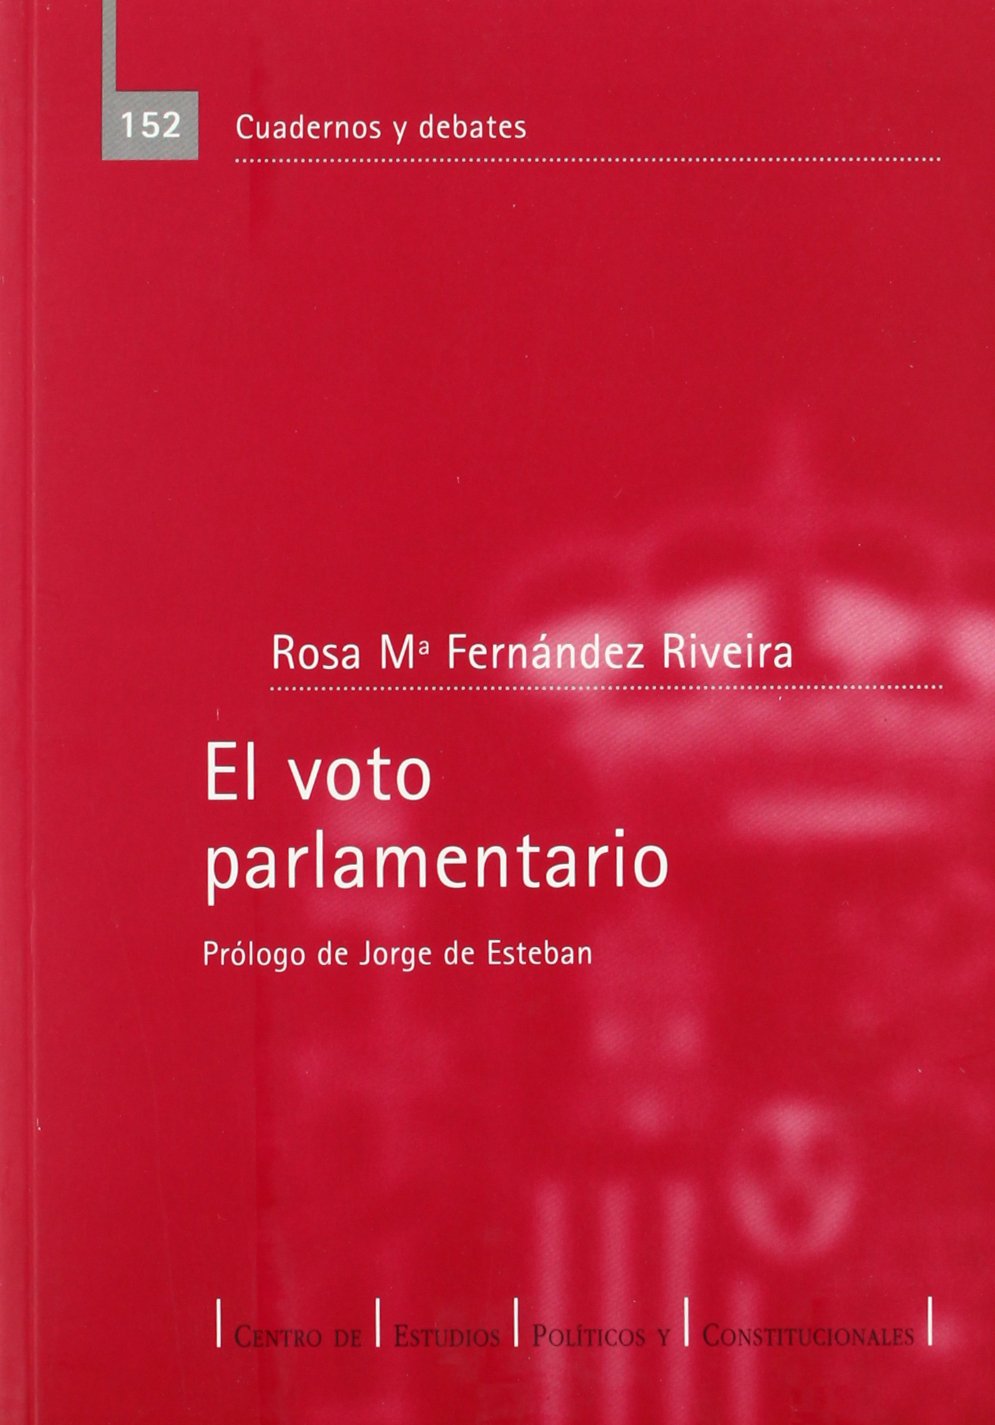 El voto parlamentario